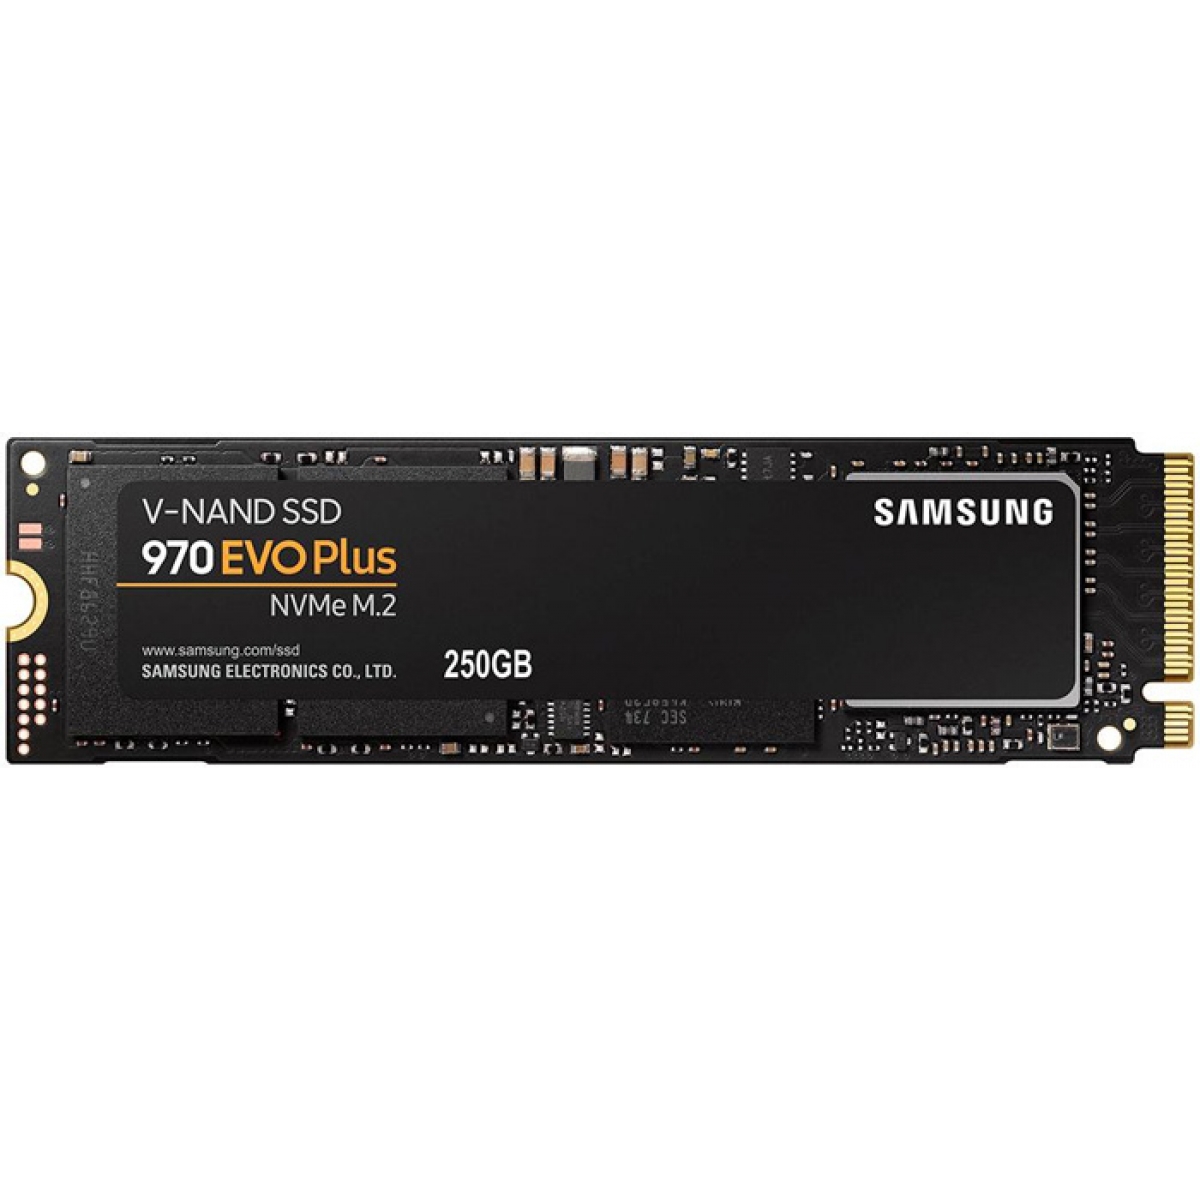 SSD Samsung 970 EVO Plus, 250GB, M.2 2280, NVMe, Leitura 3500MBs e Gravação 2300MBs, MZ-V7S250B/AM